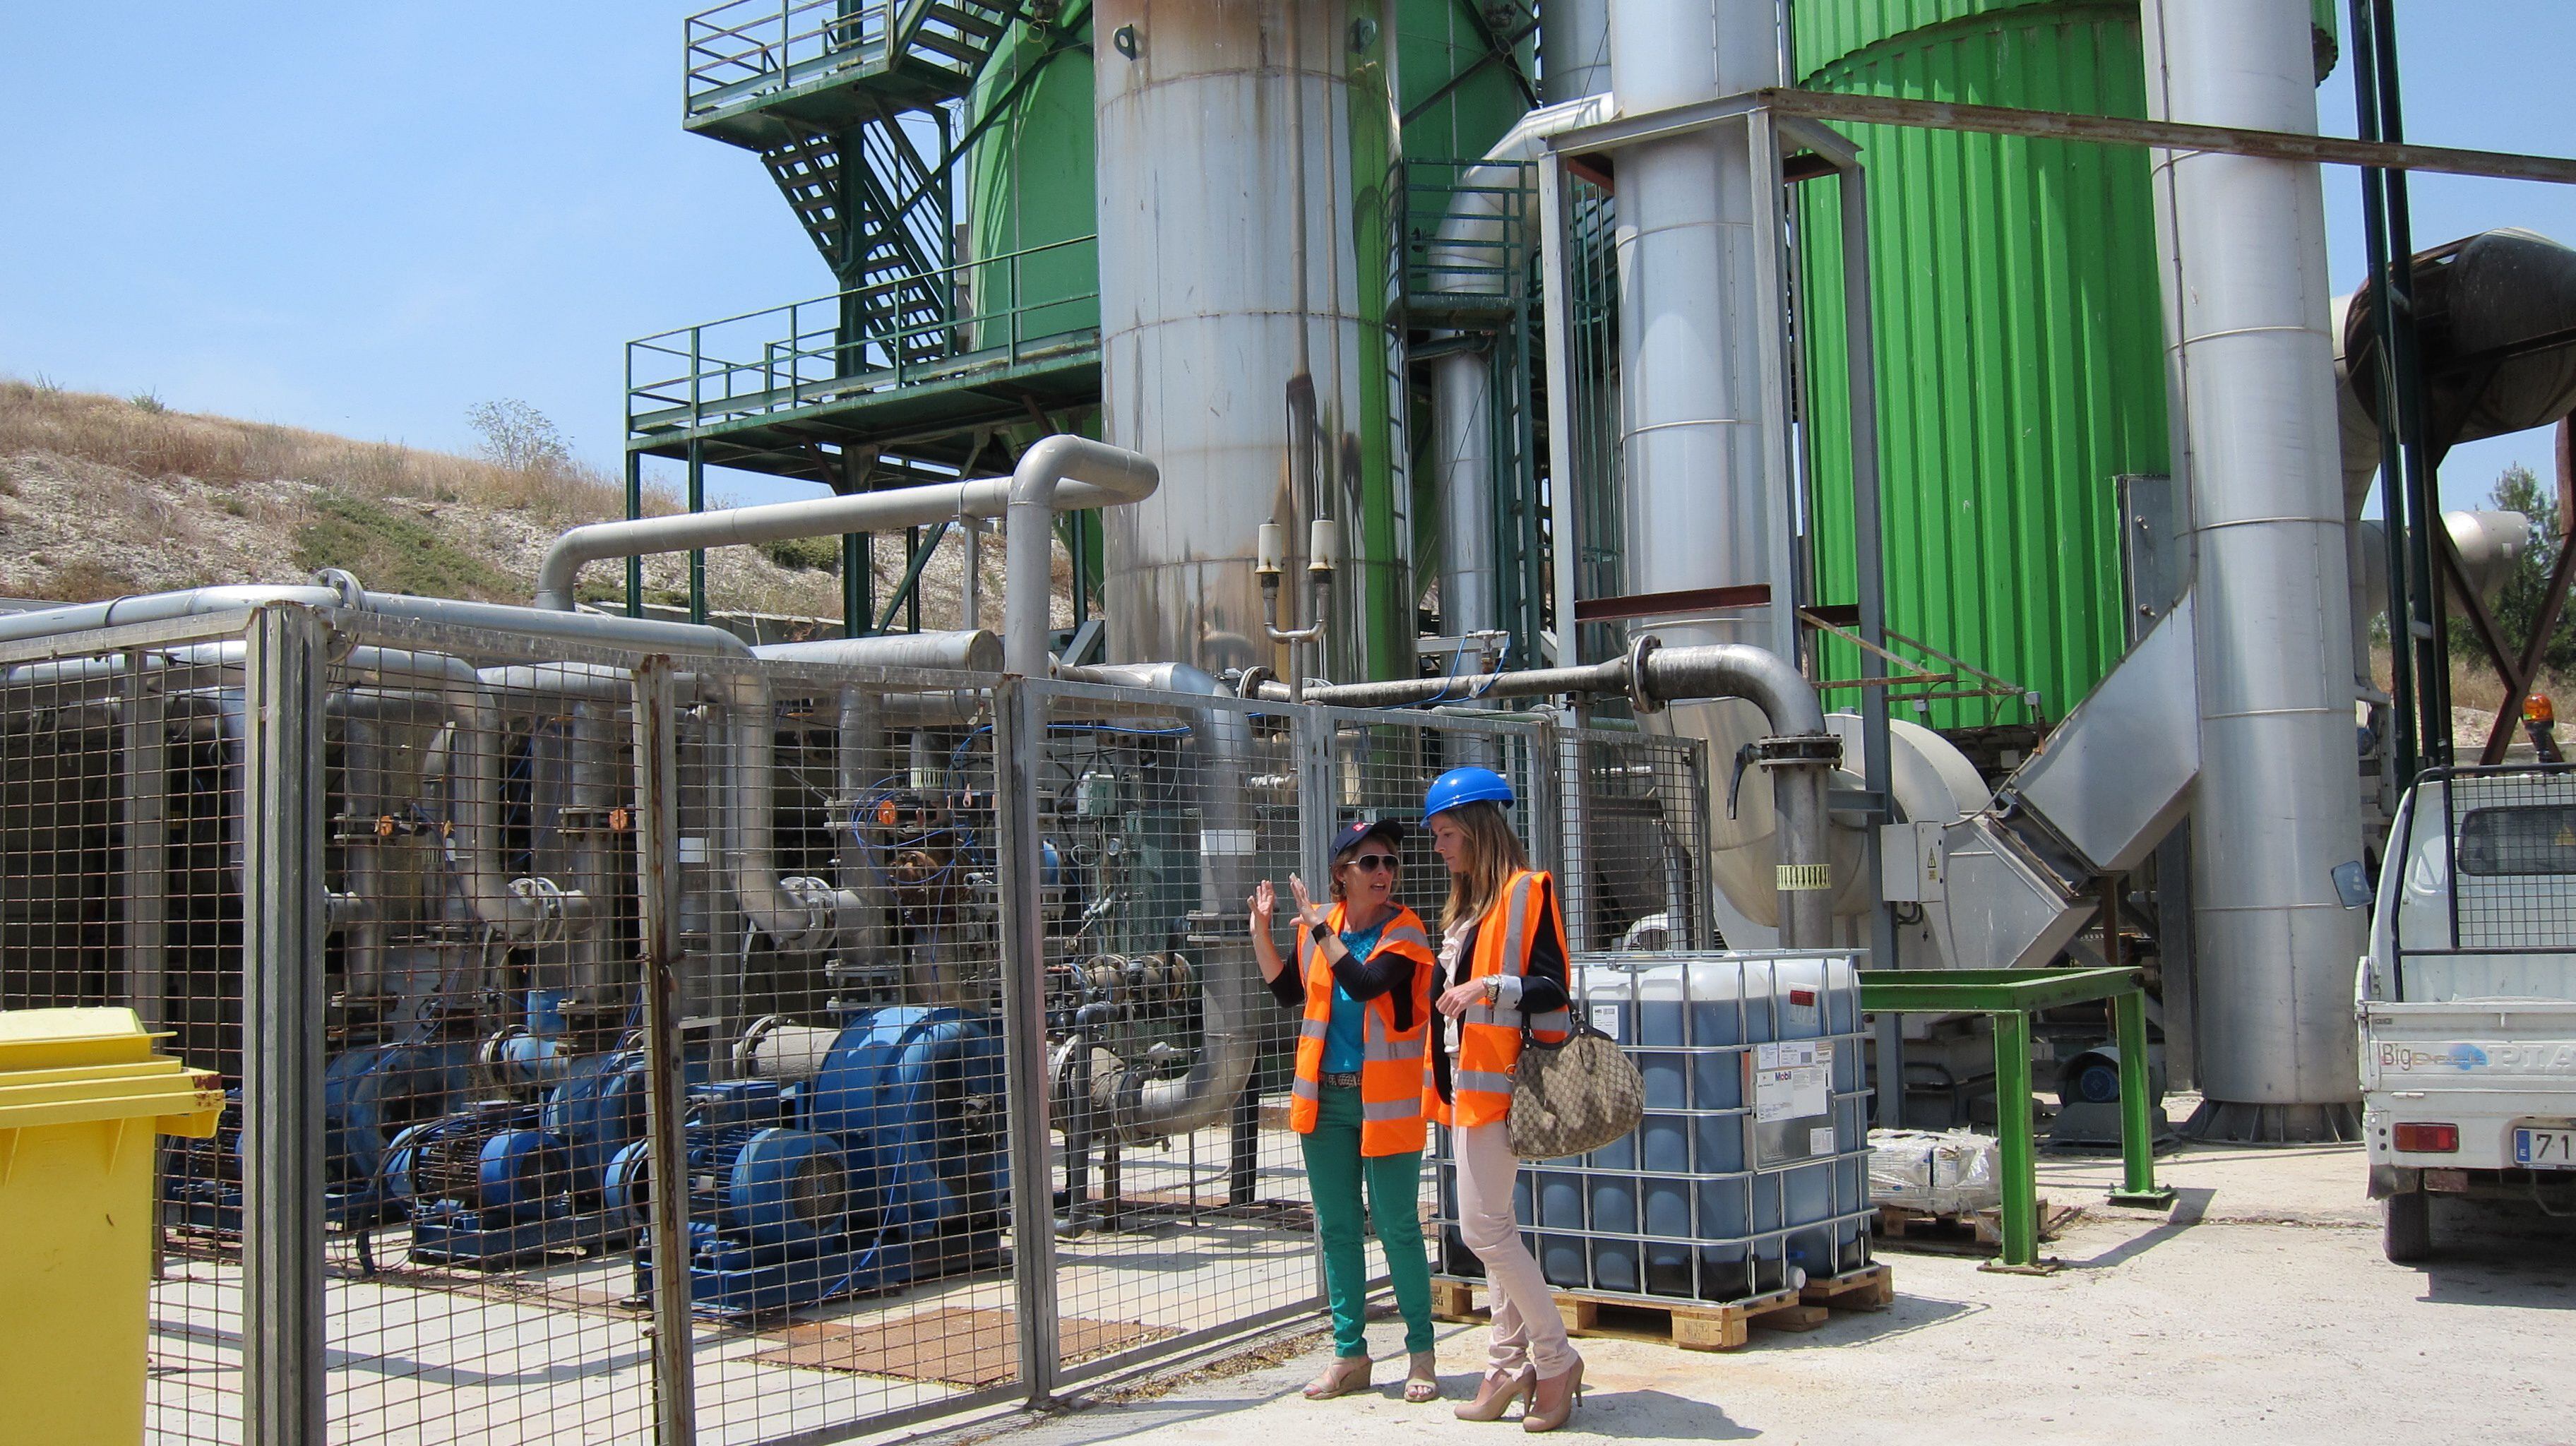 El biogás se procesa y obtiene en plantas especialmente construidas y son varios los países que lo aprovechan para generar energía - (CESPA)